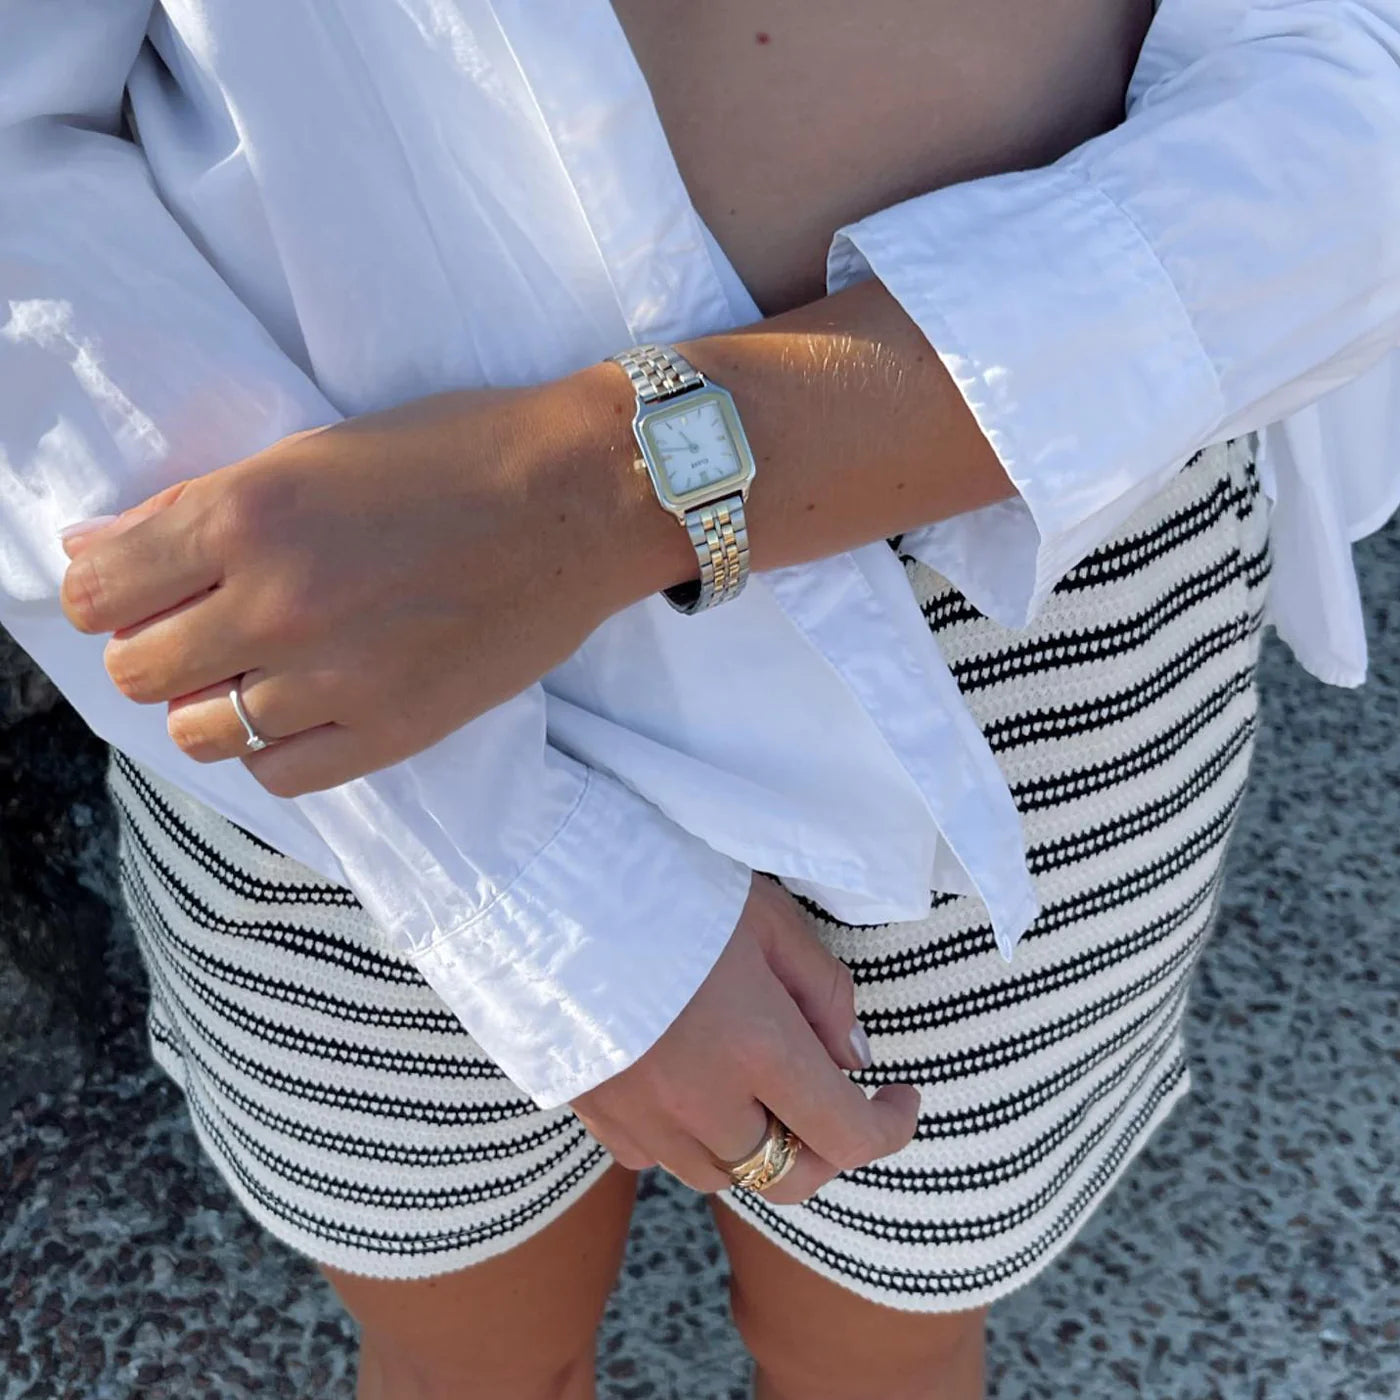 Frau trägt ein sommerliches Outfit und die  Cluse Stahl-Uhr "Gracieuse Petite" in Stahl-Gold-Optik (bicolor) mit weißem Zifferblatt an ihrem Handgelenk